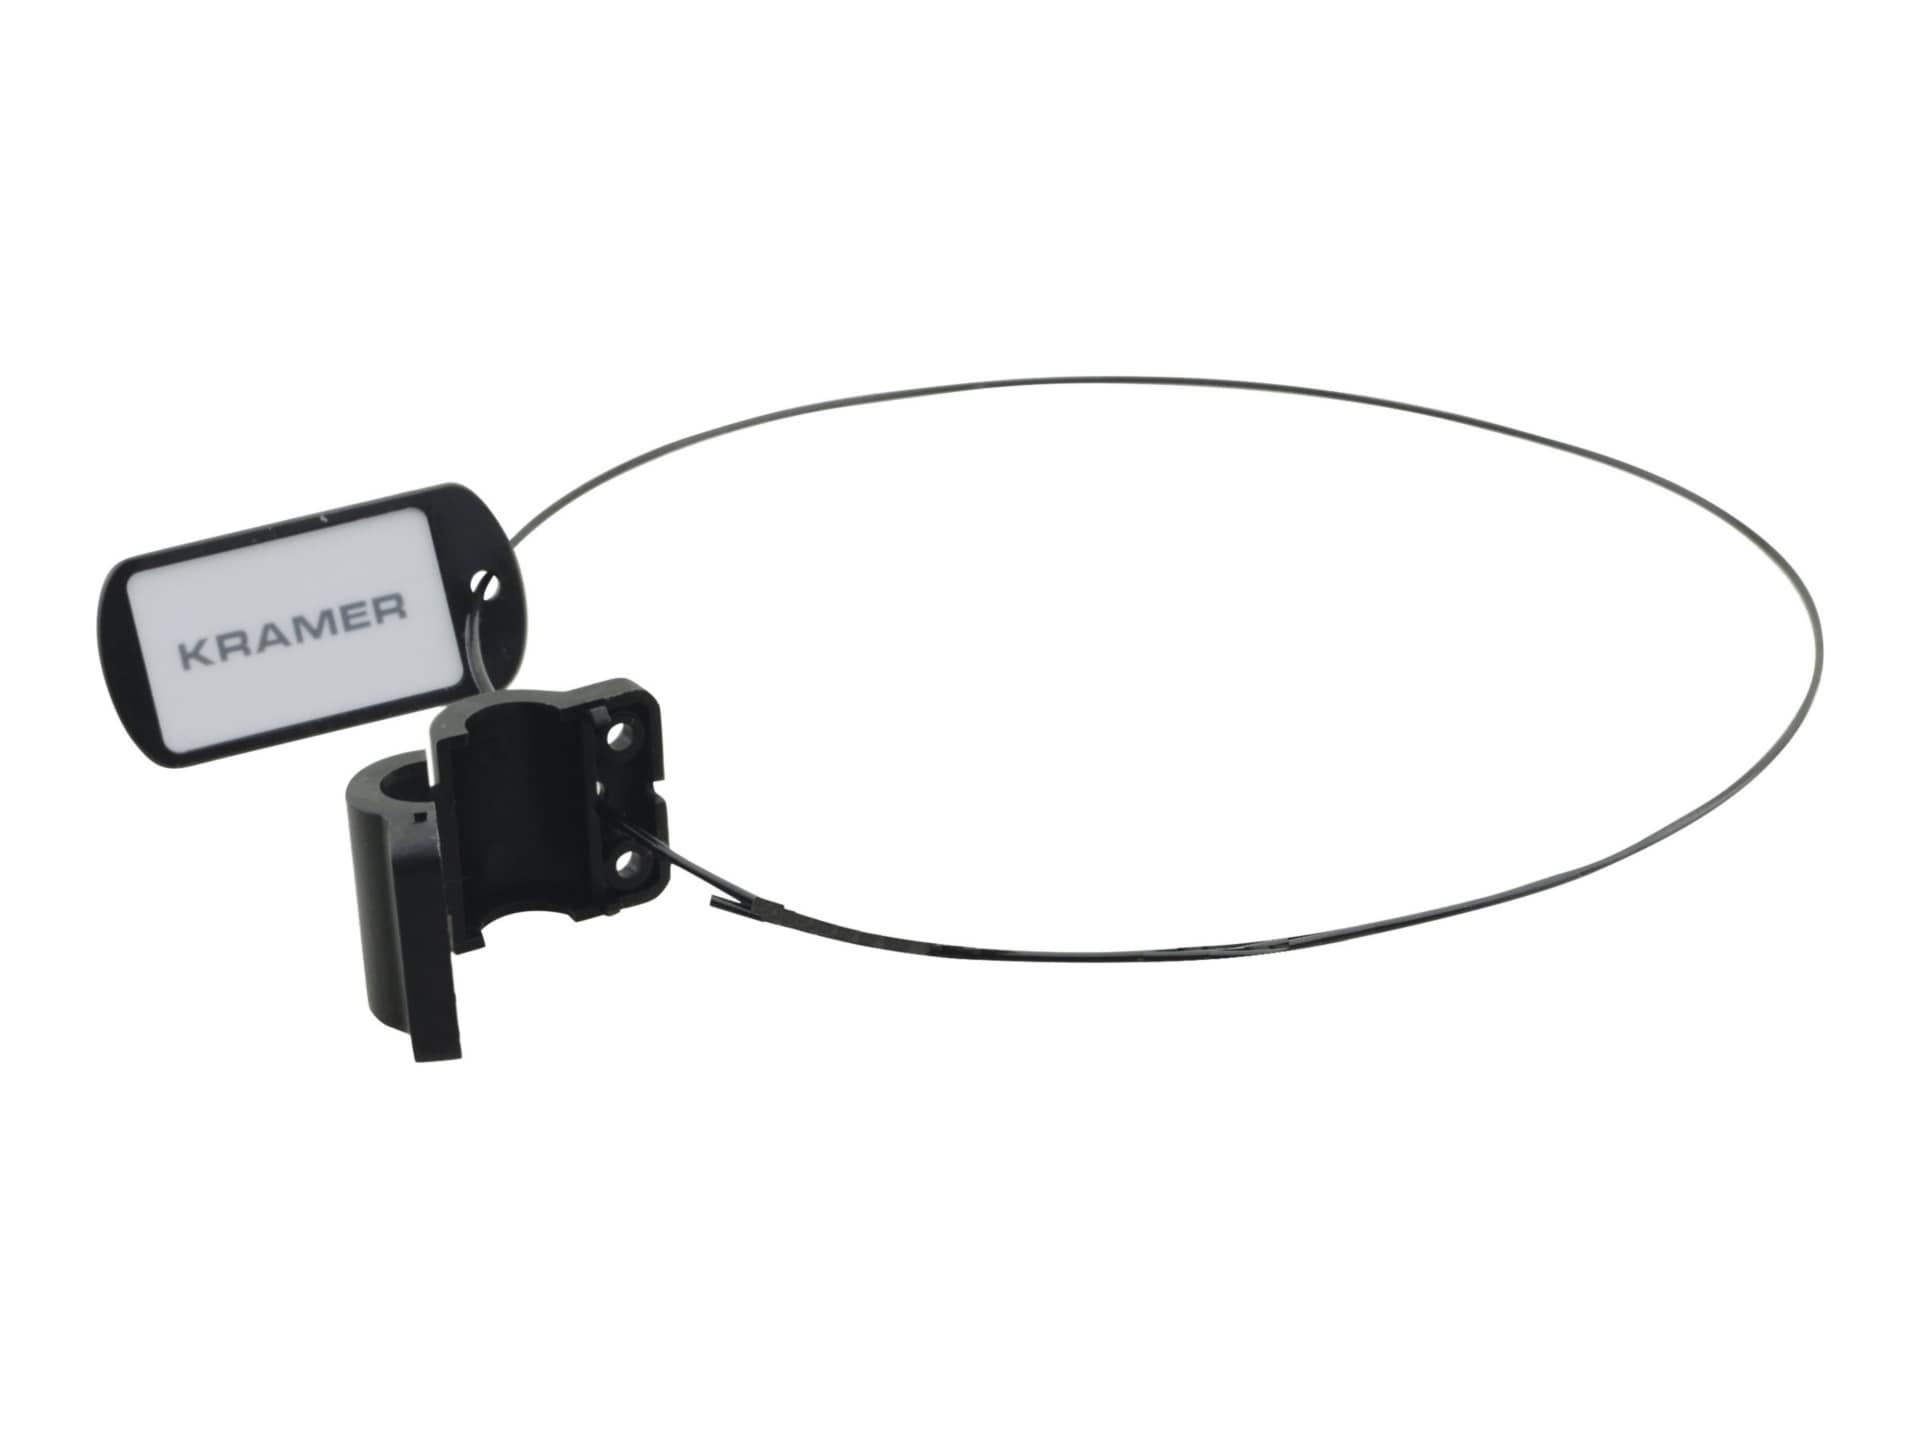 Kramer AD-RING - HDMI adapter ring